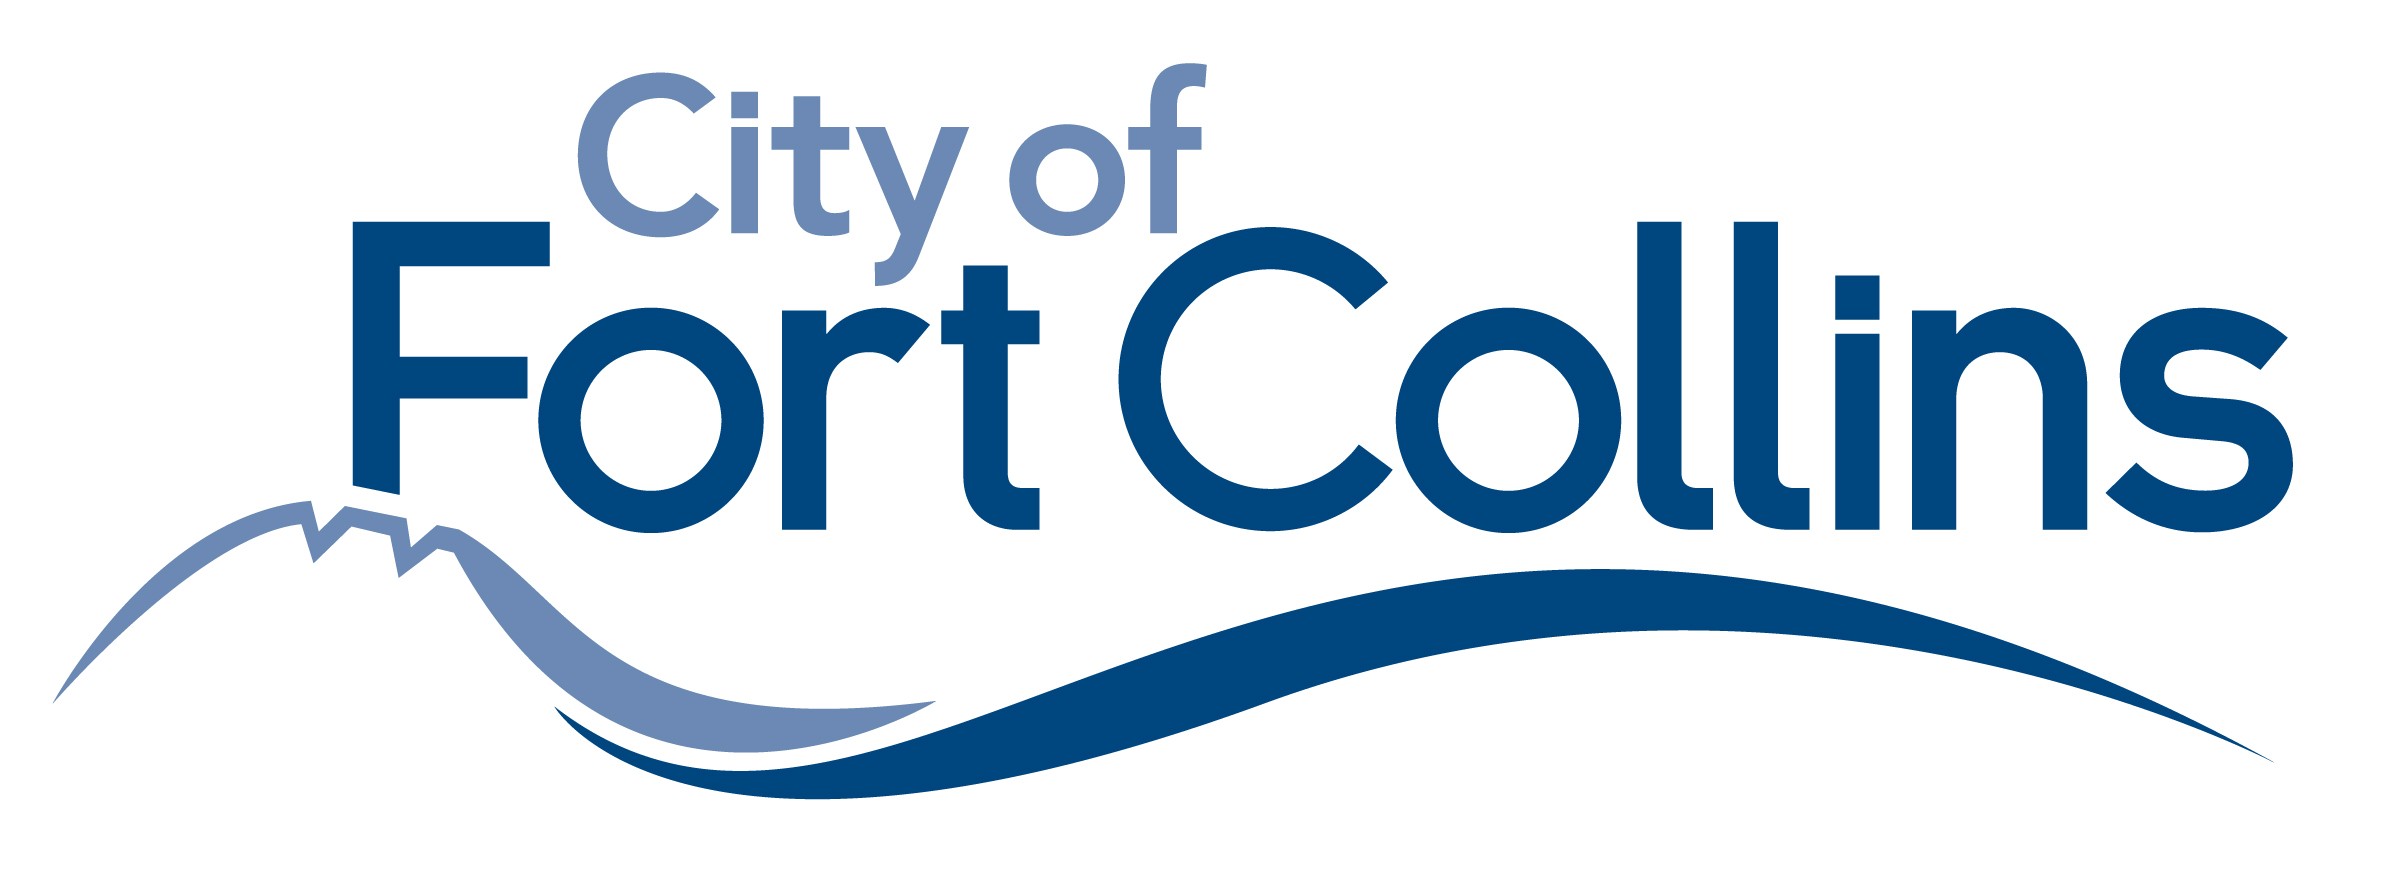 Fort Collins Utilities Colorado logo